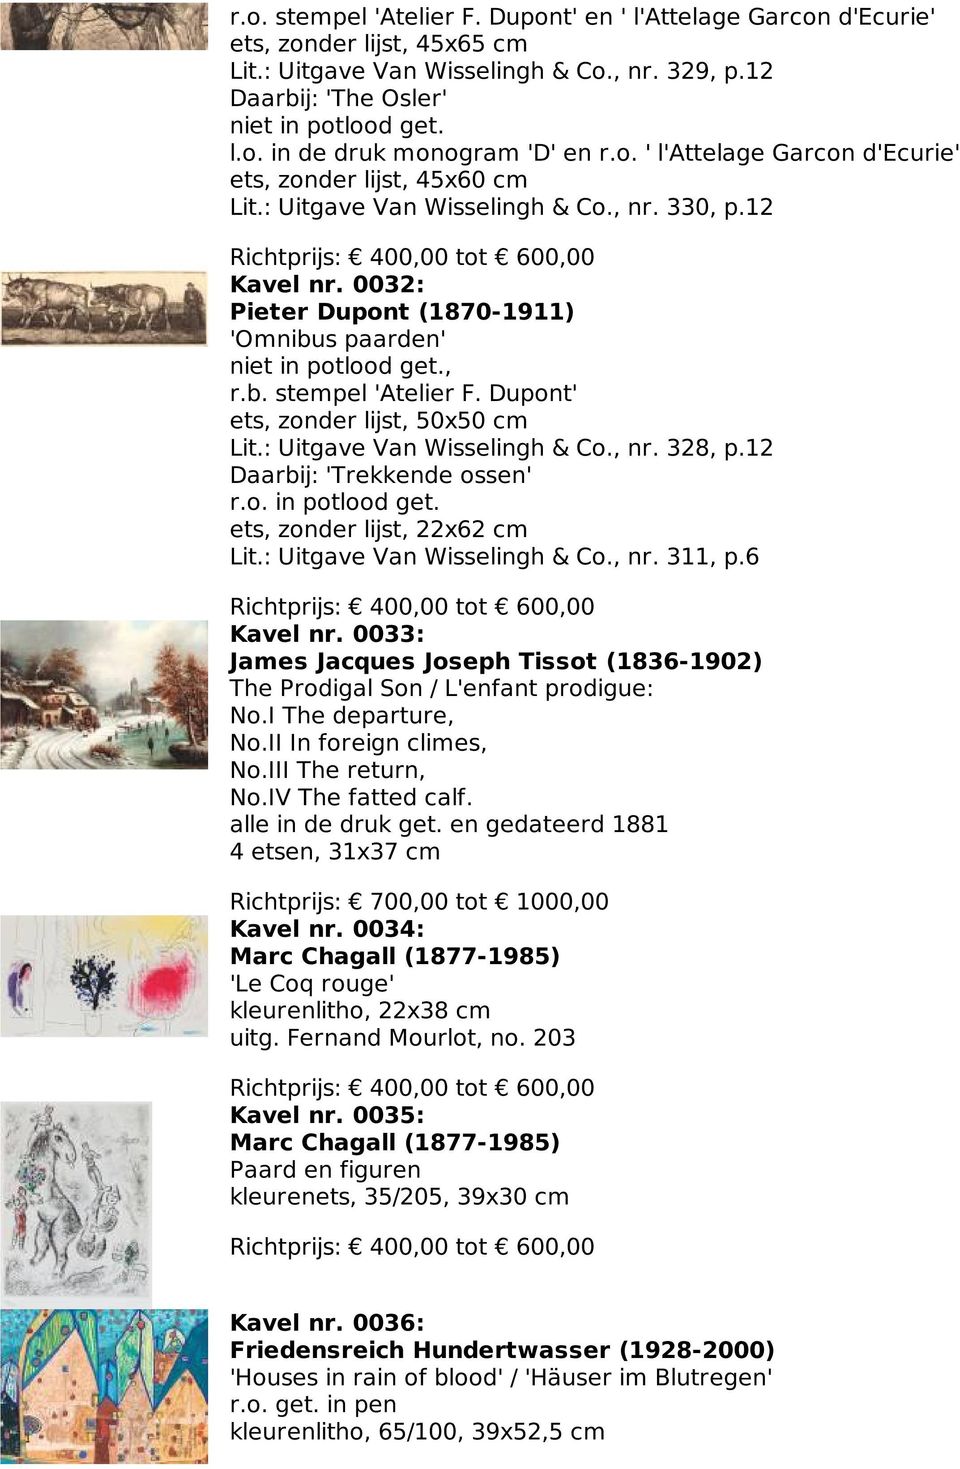 0032: Pieter Dupont (1870-1911) 'Omnibus paarden' niet in potlood get., r.b. stempel 'Atelier F. Dupont' ets, zonder lijst, 50x50 cm Lit.: Uitgave Van Wisselingh & Co., nr. 328, p.